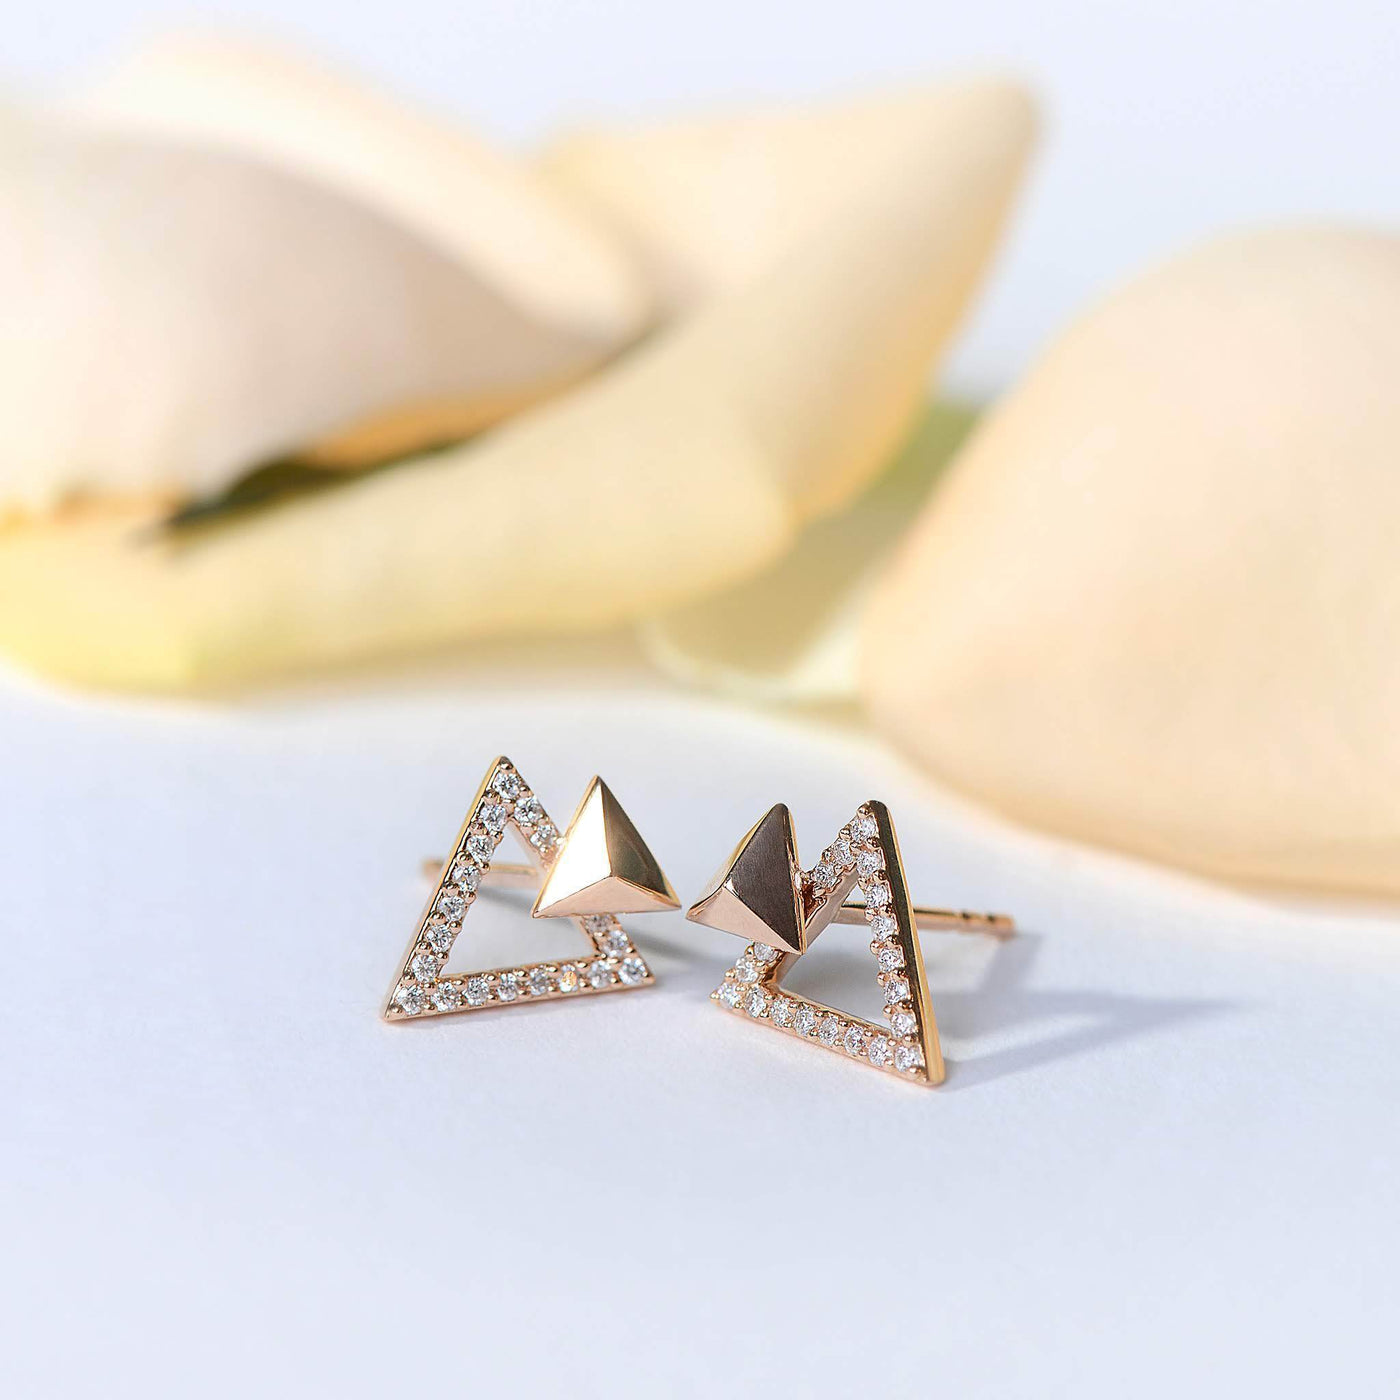 Tri-Angled Diamond Earrings-Earrings-Isle of Her-Made to Order-Isle of Her